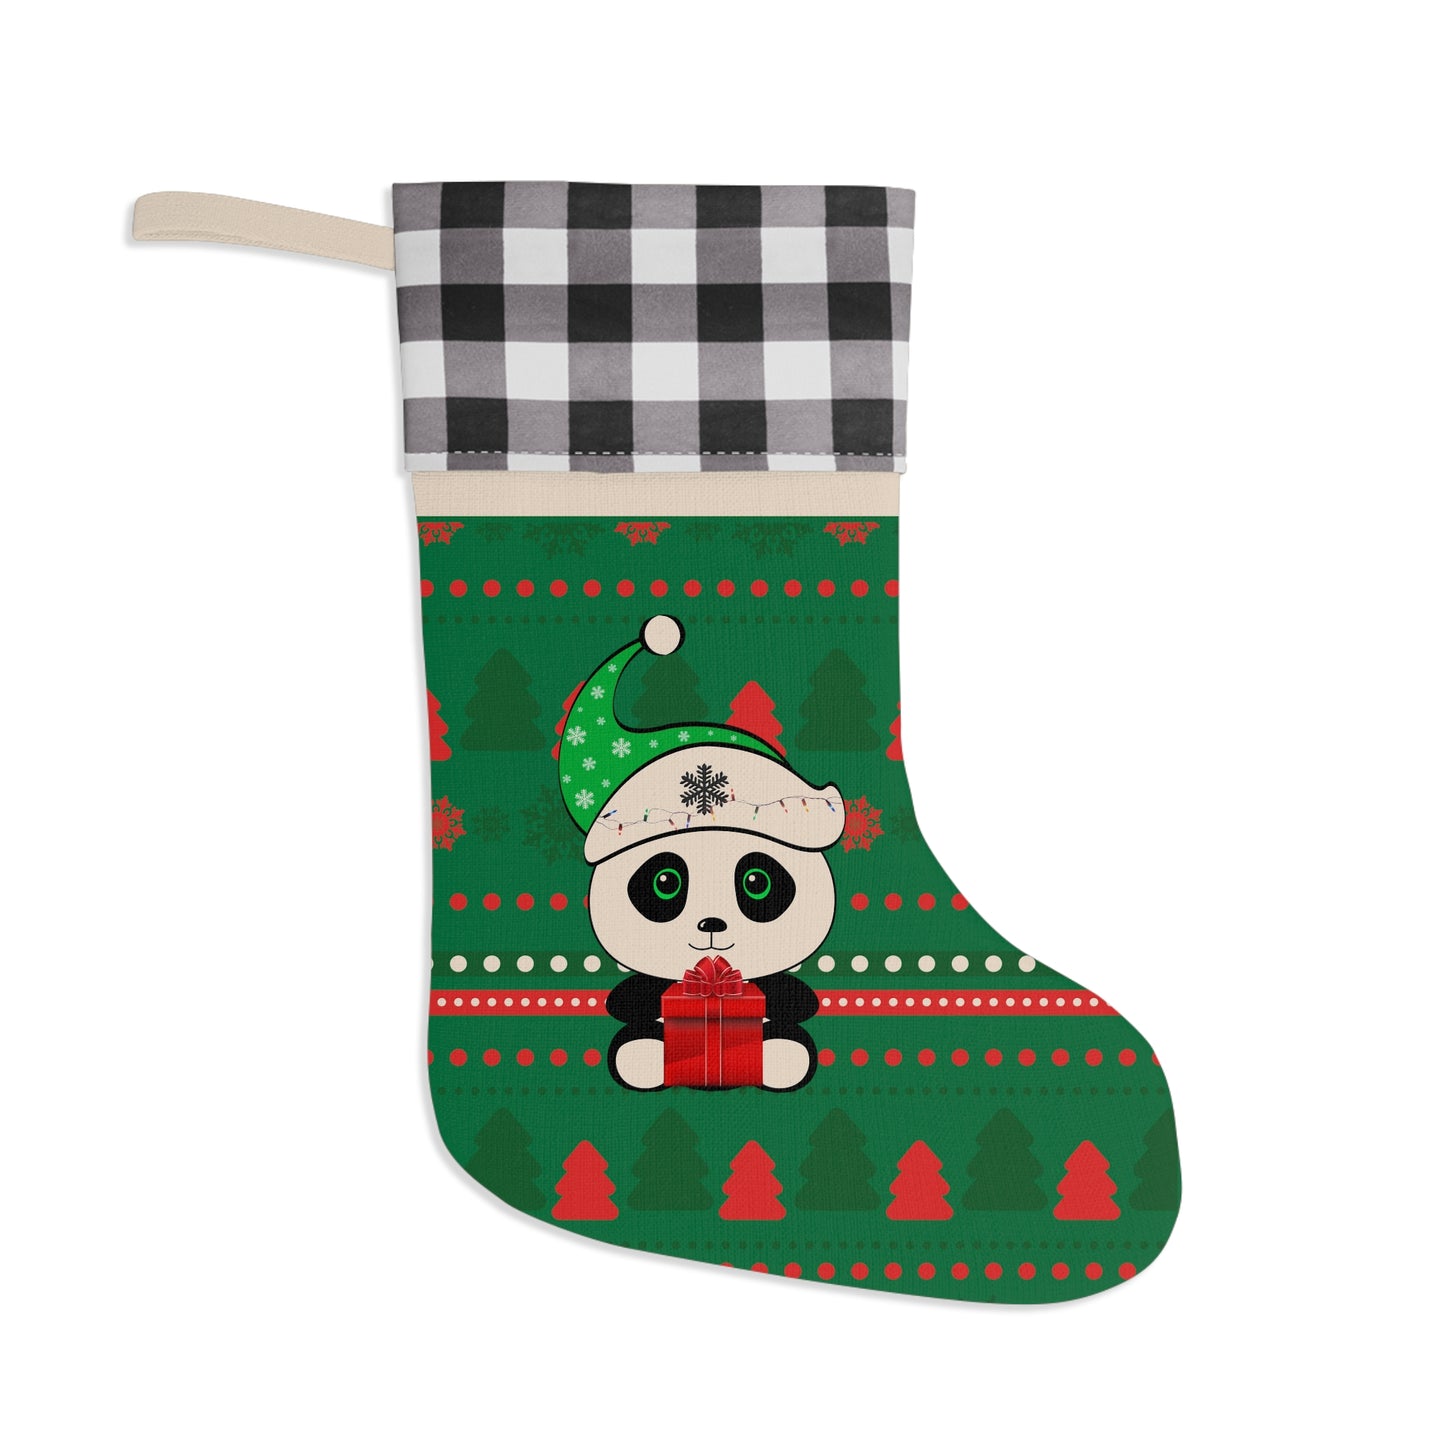 Panda Christmas sweater pattern Stocking